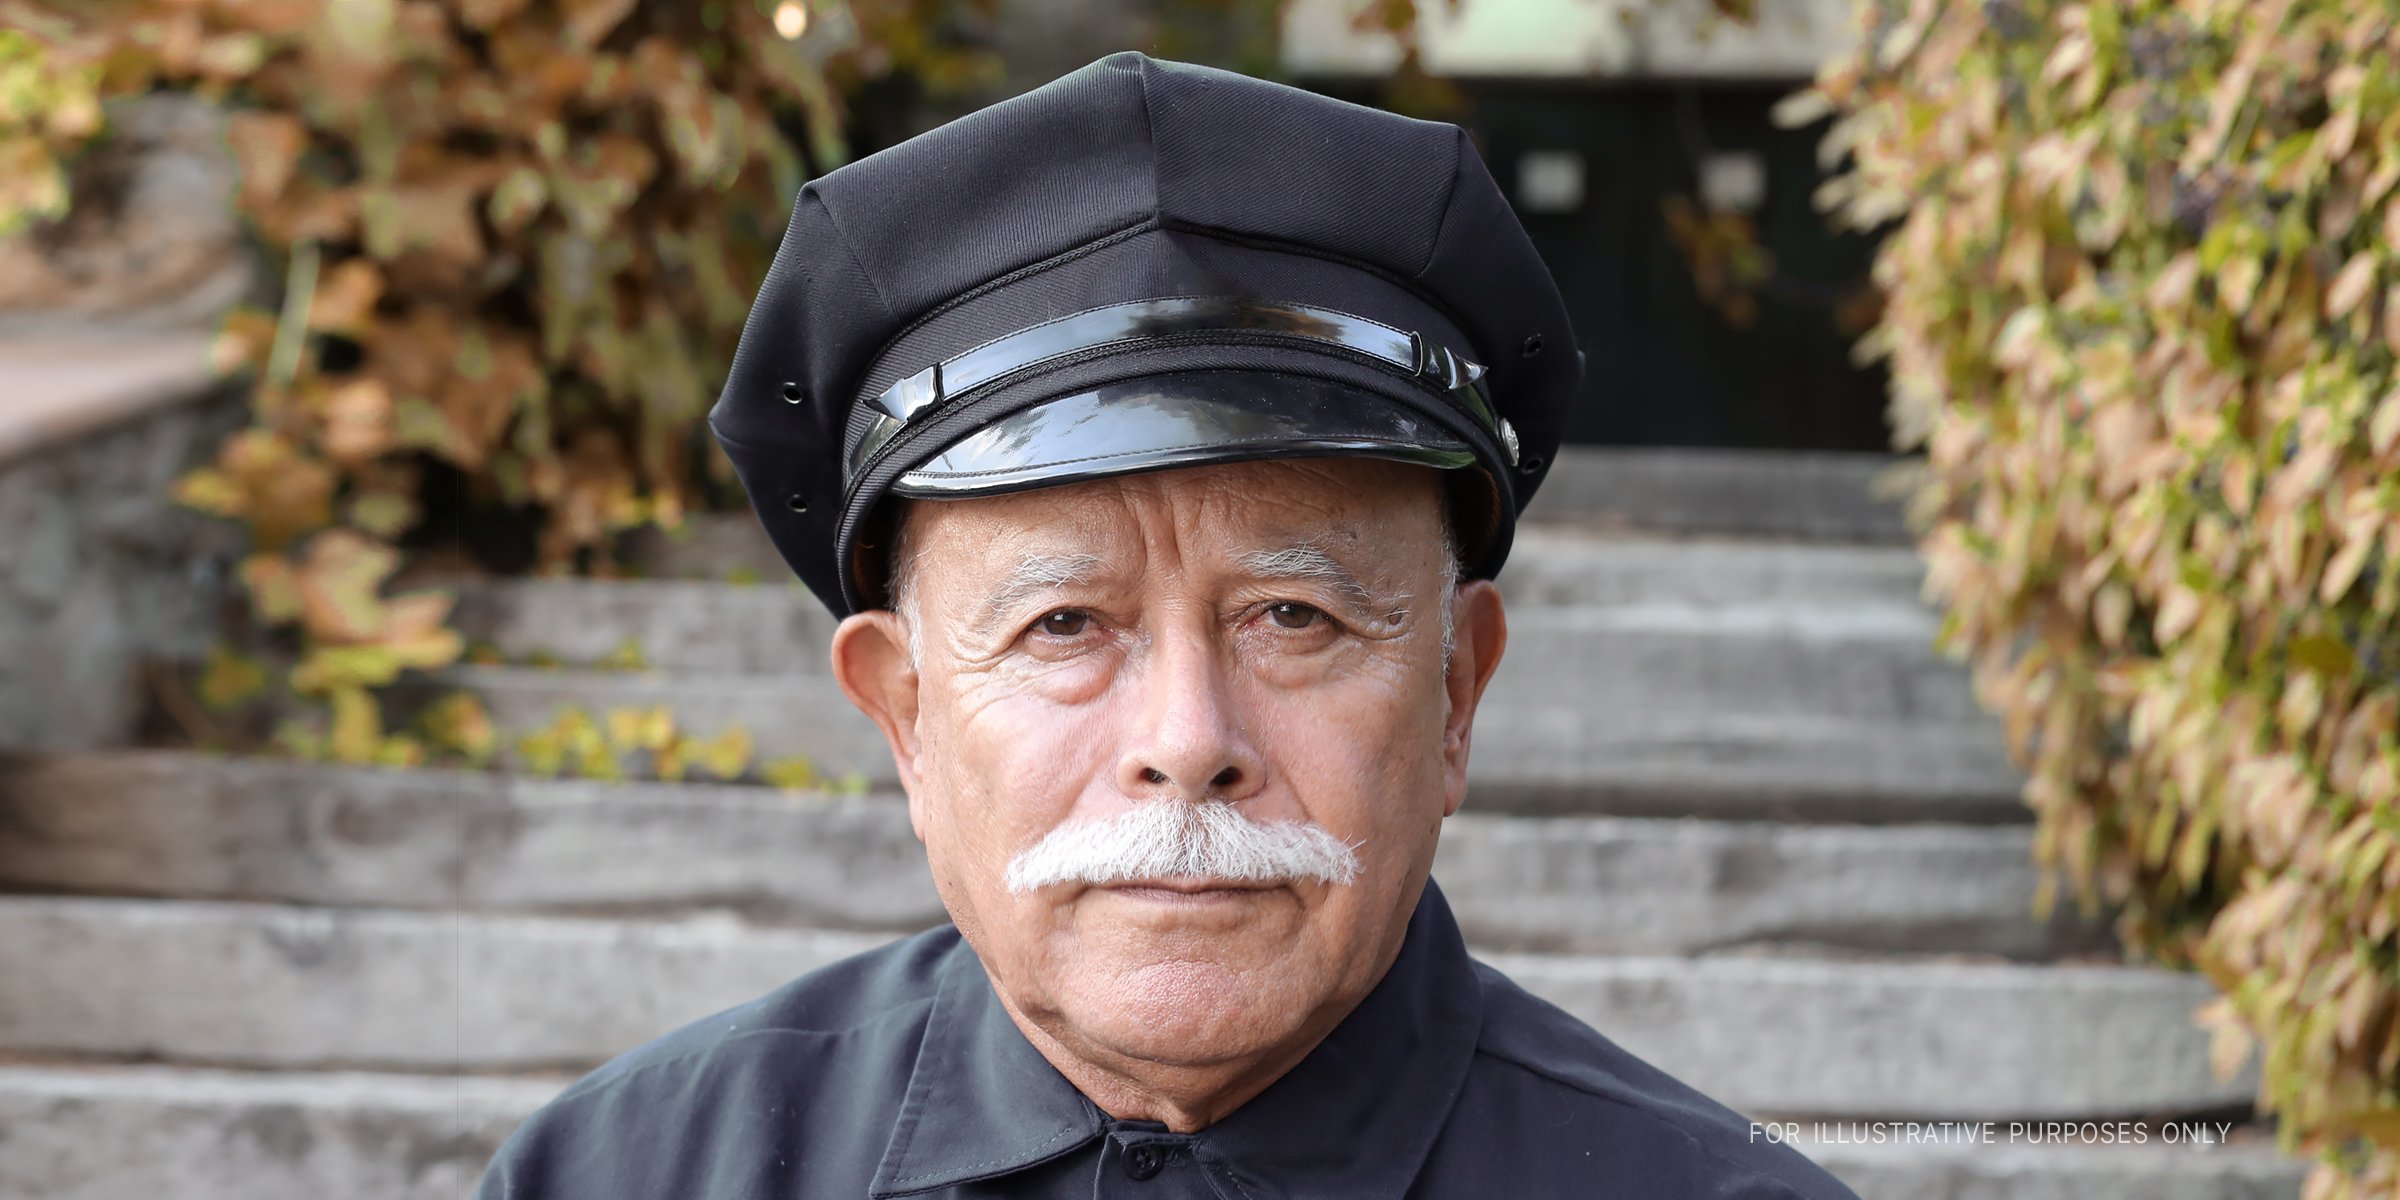 Ein älterer Polizist | Quelle: Shutterstock